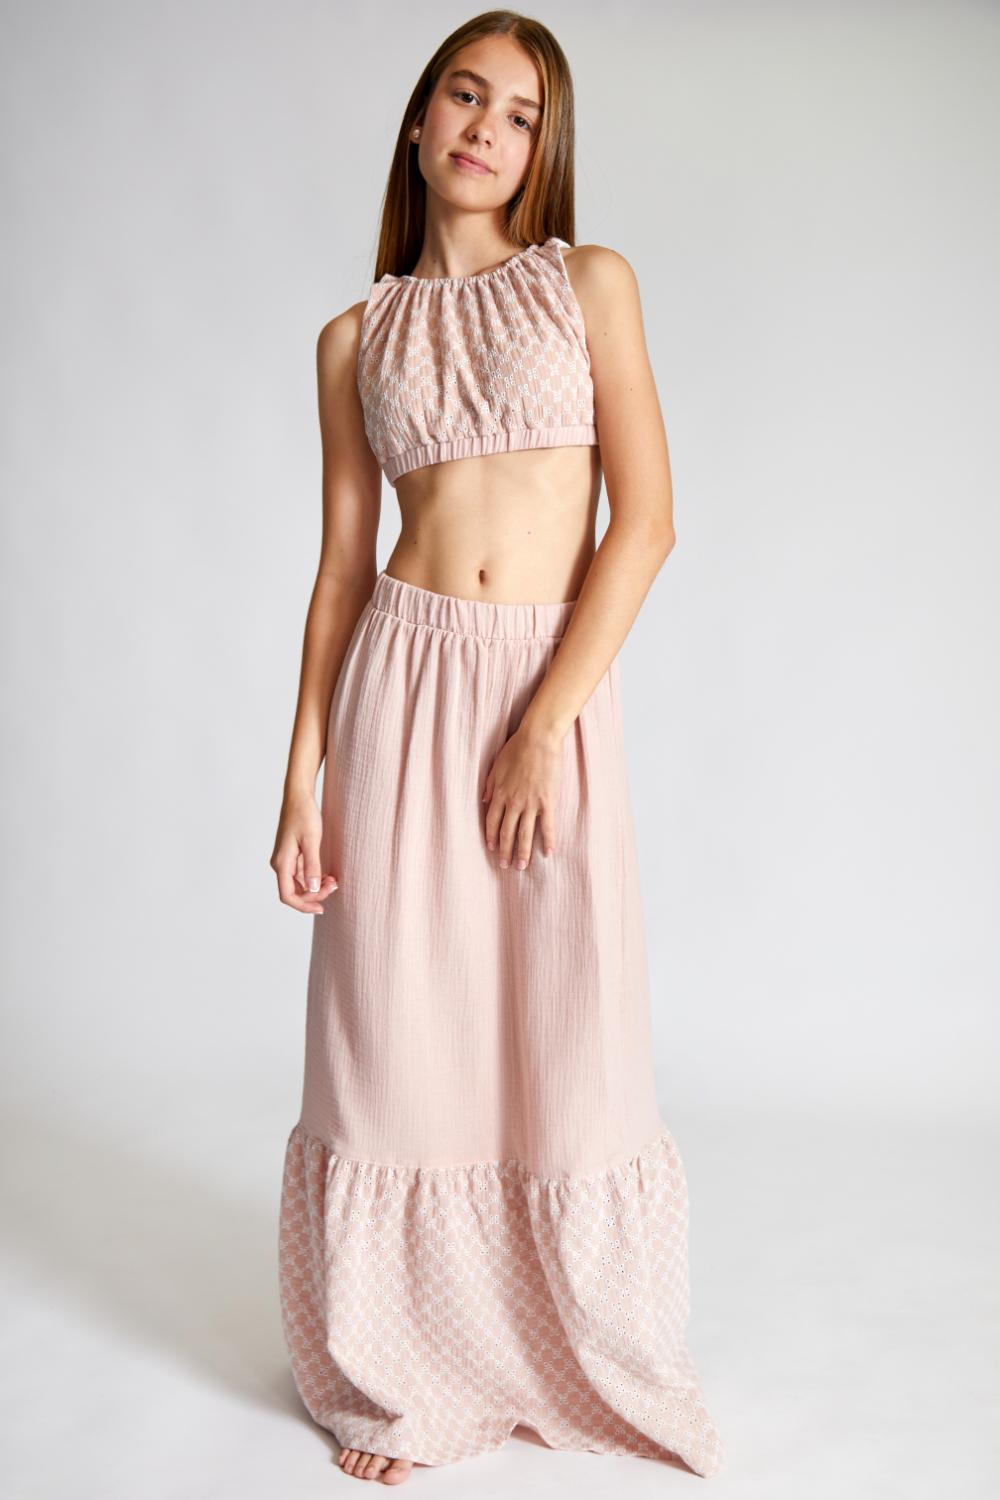 Positano Dusty Pink Midi Skirt